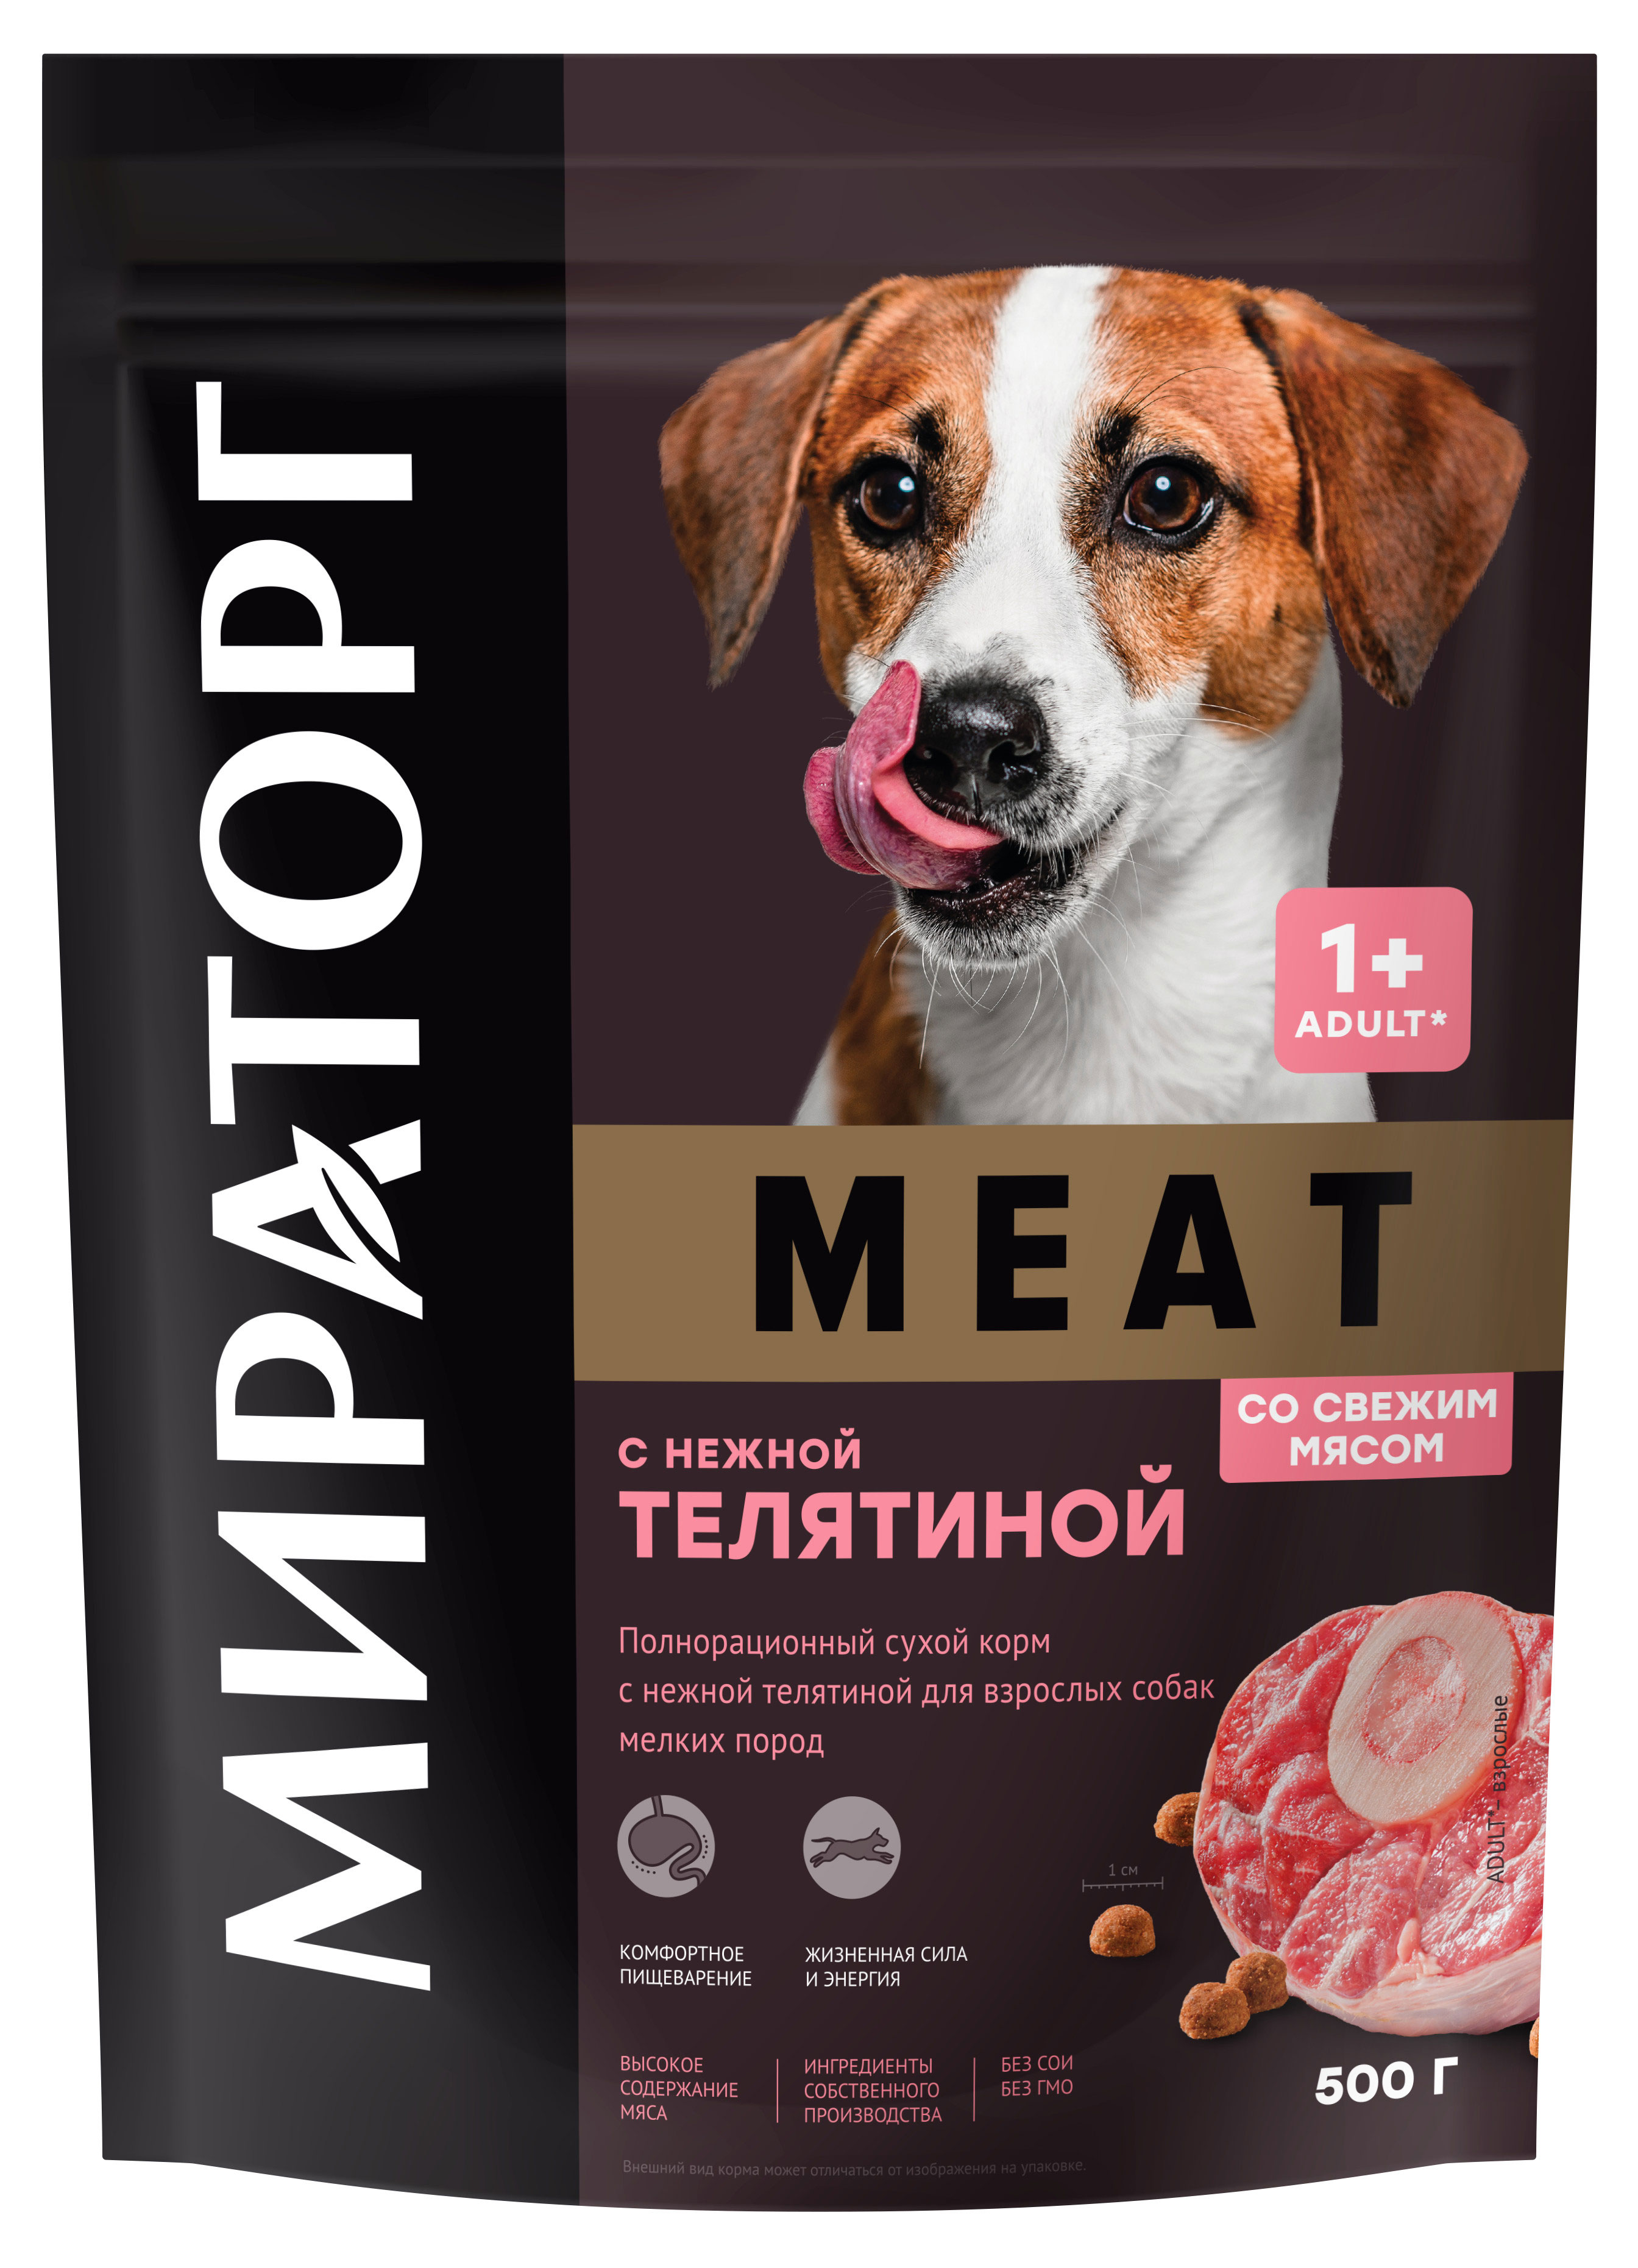 Мираторг | Сухой корм для собак мелких пород «Мираторг» Winner MEAT с нежной телятиной, 500 г